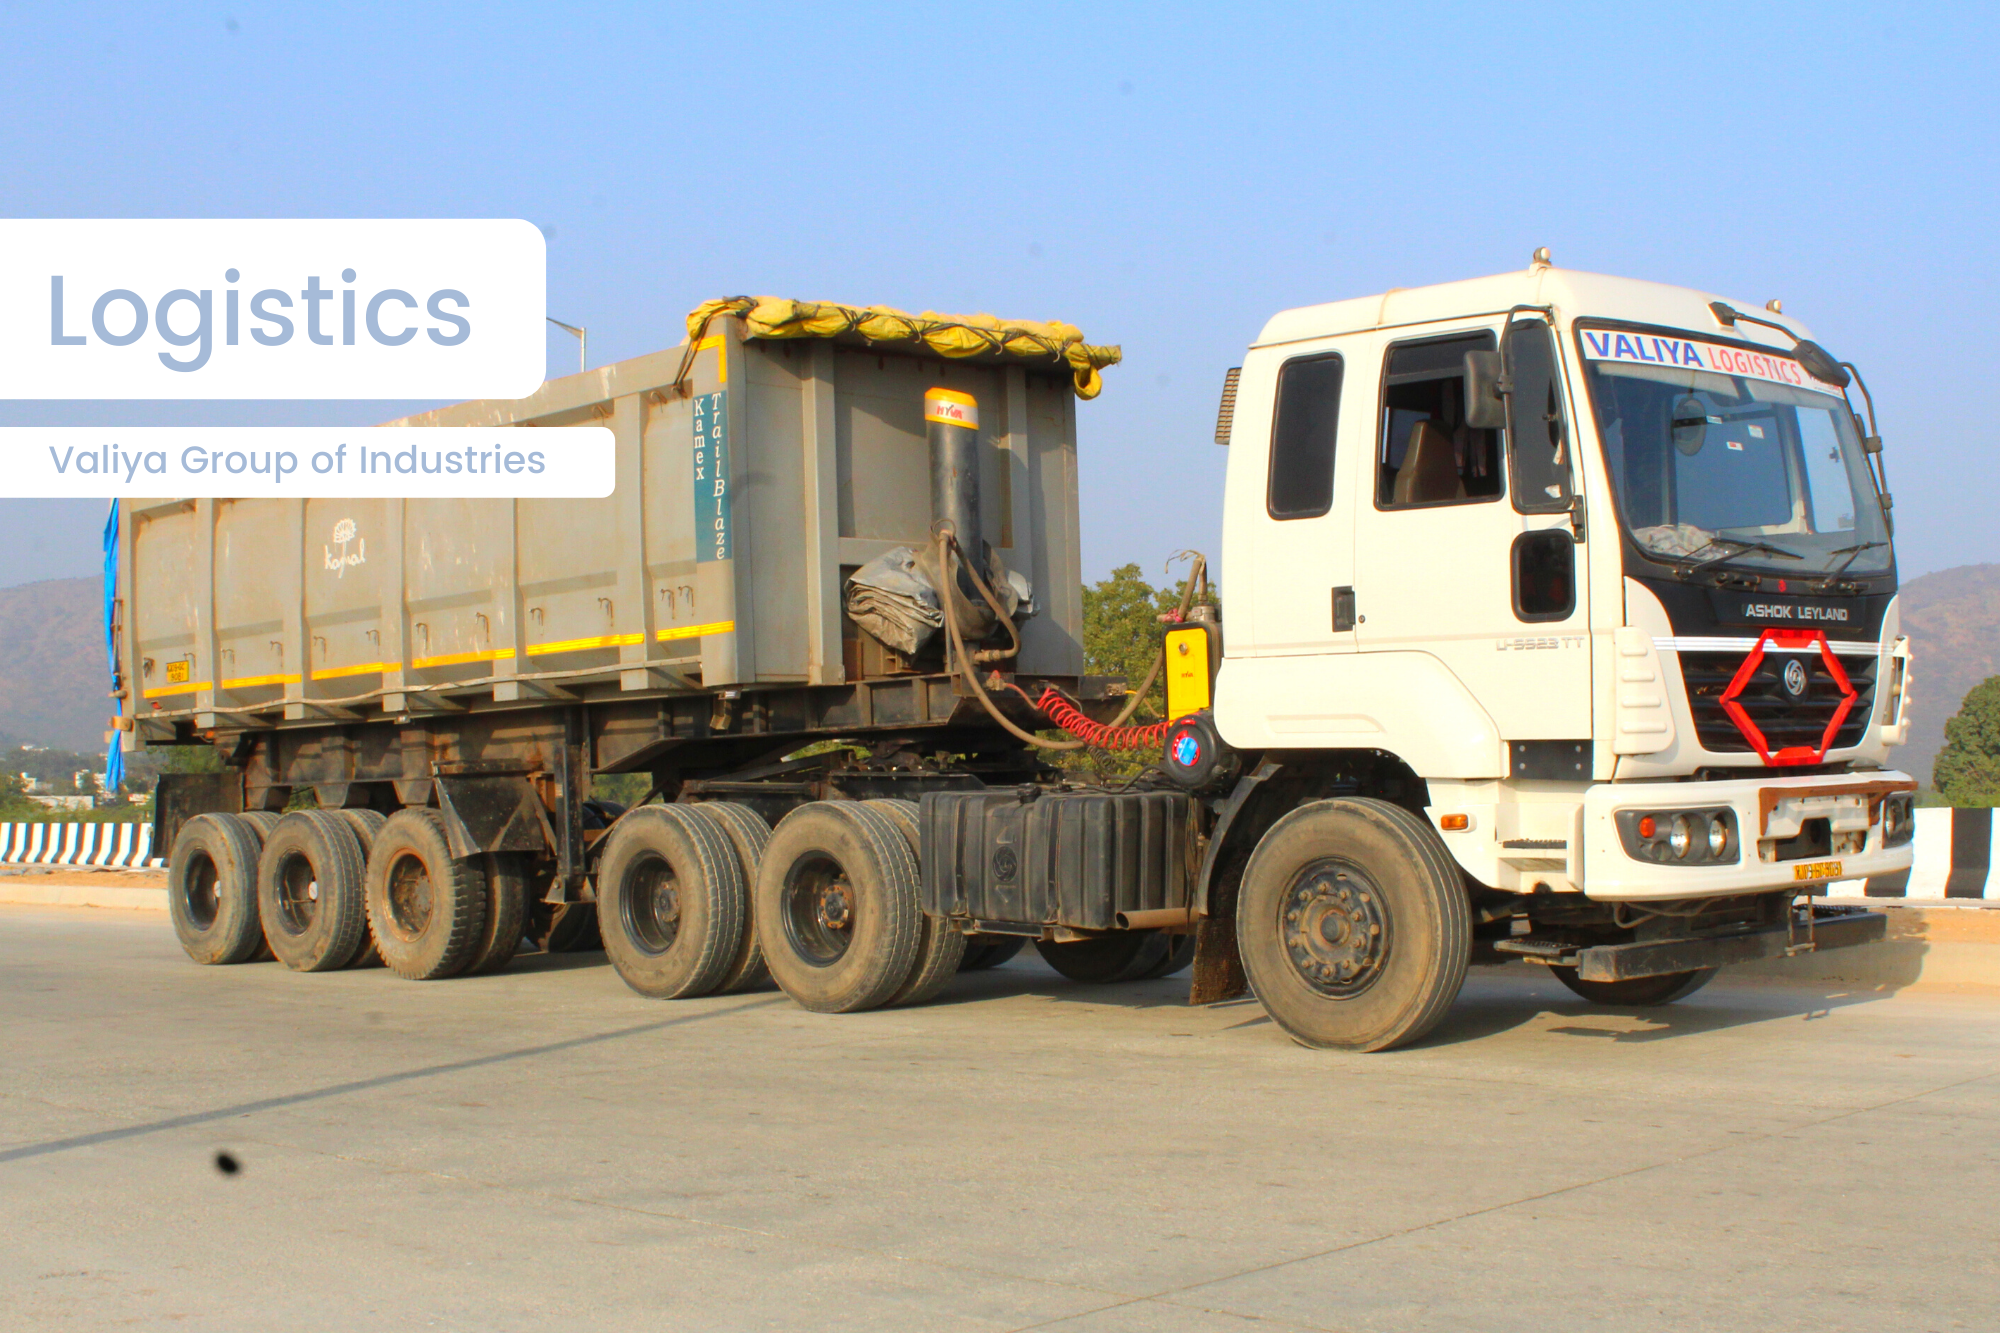 liquid logistics services in udaipur (india)